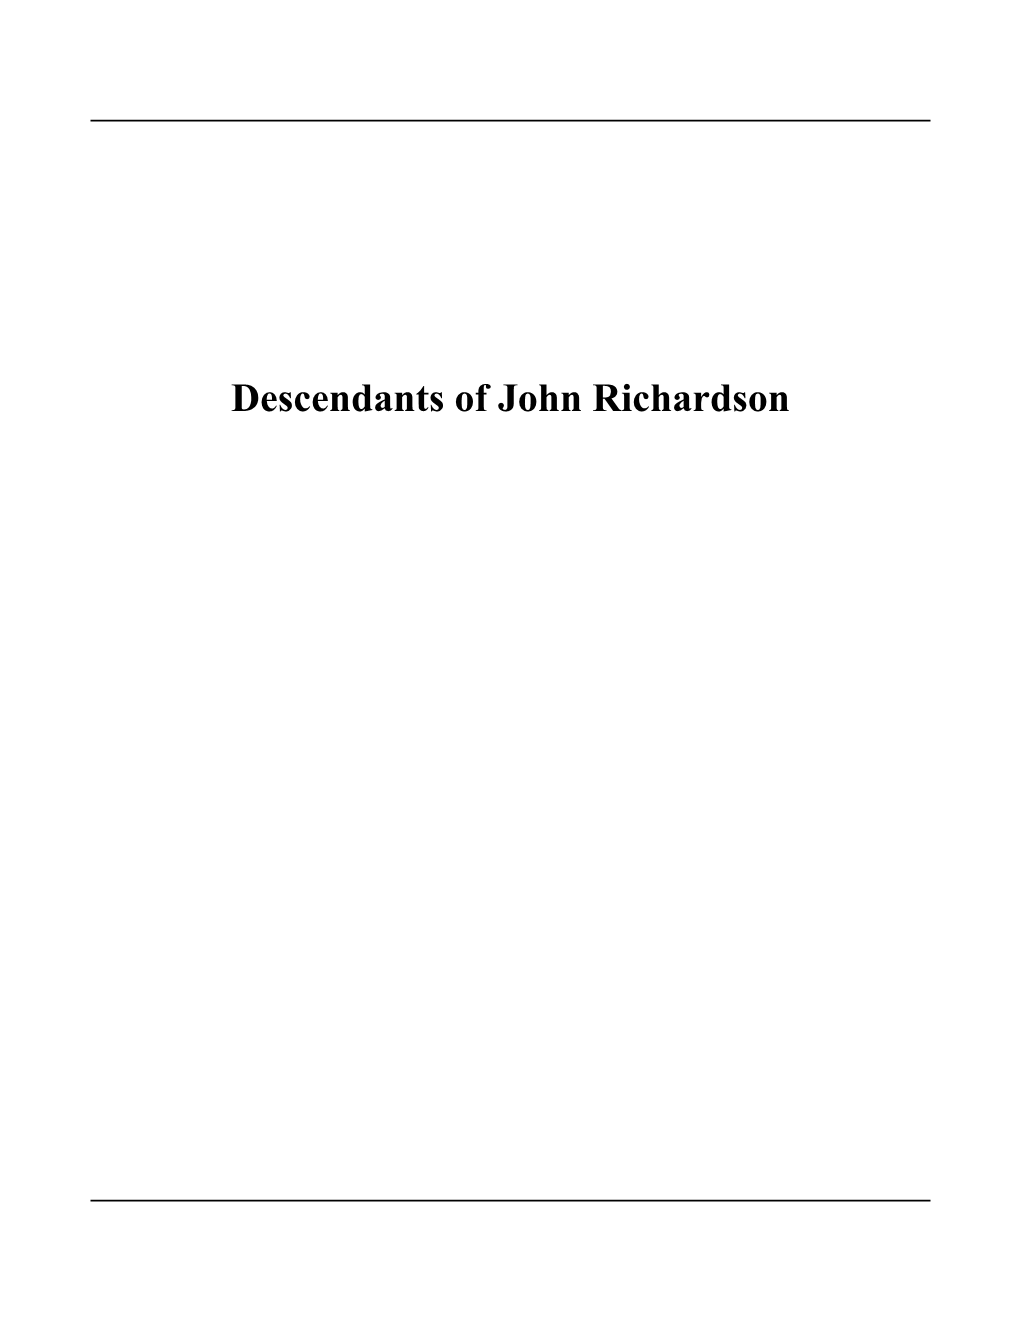 Descendants of John Richardson Contents